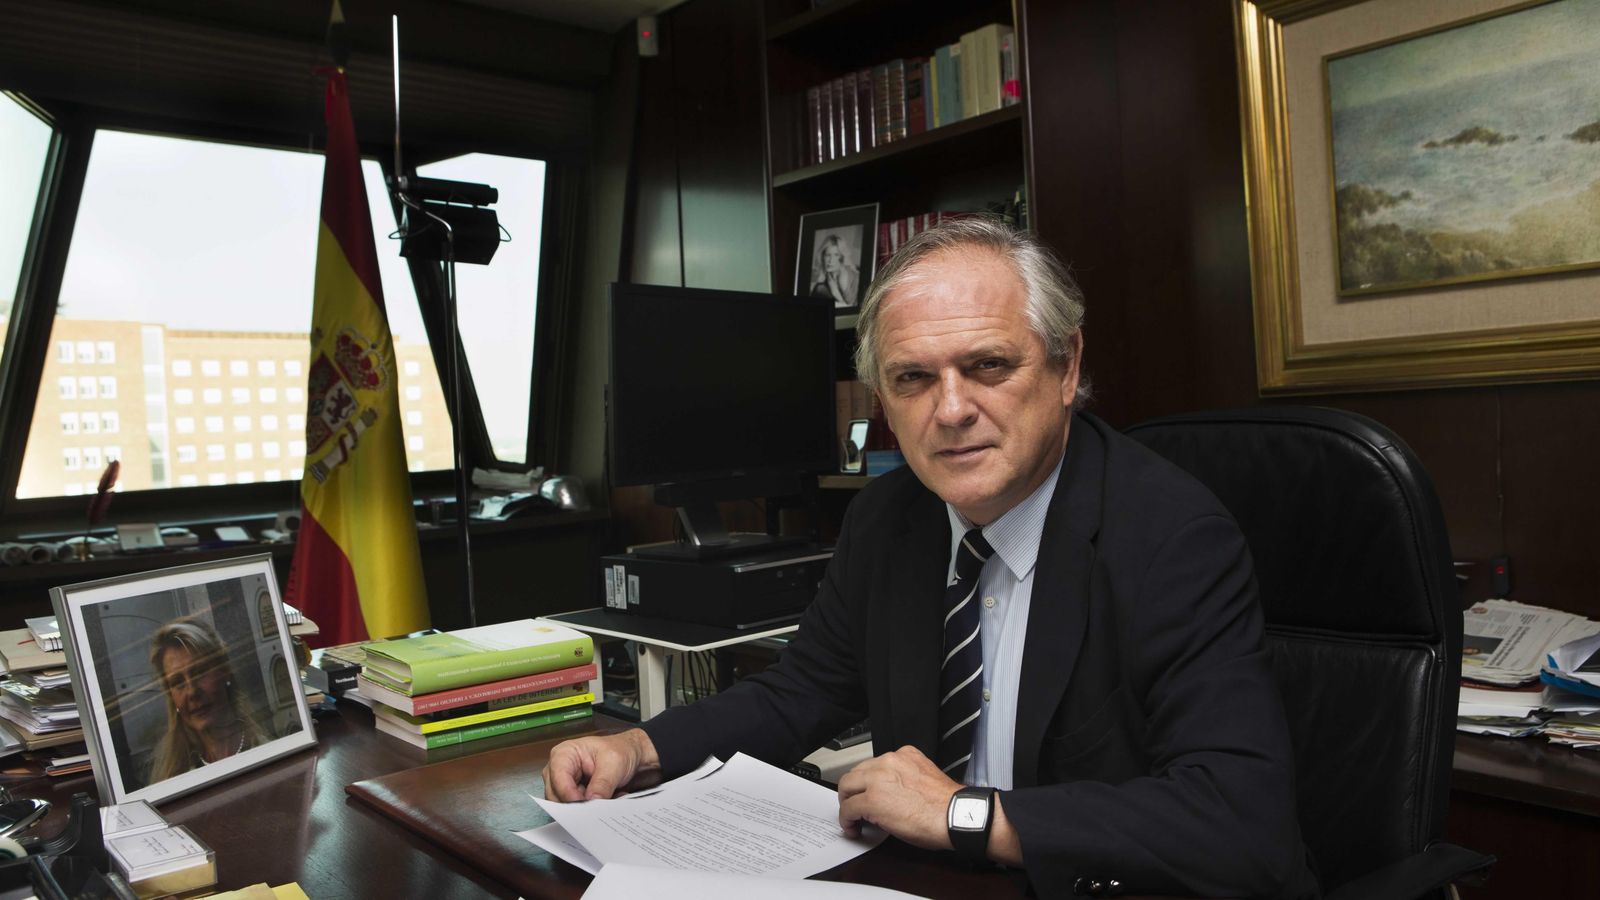 Foto: Luis Ignacio Ortega Álvarez, miembro del Tribunal Constitucional (tribunalconstitucional.es)